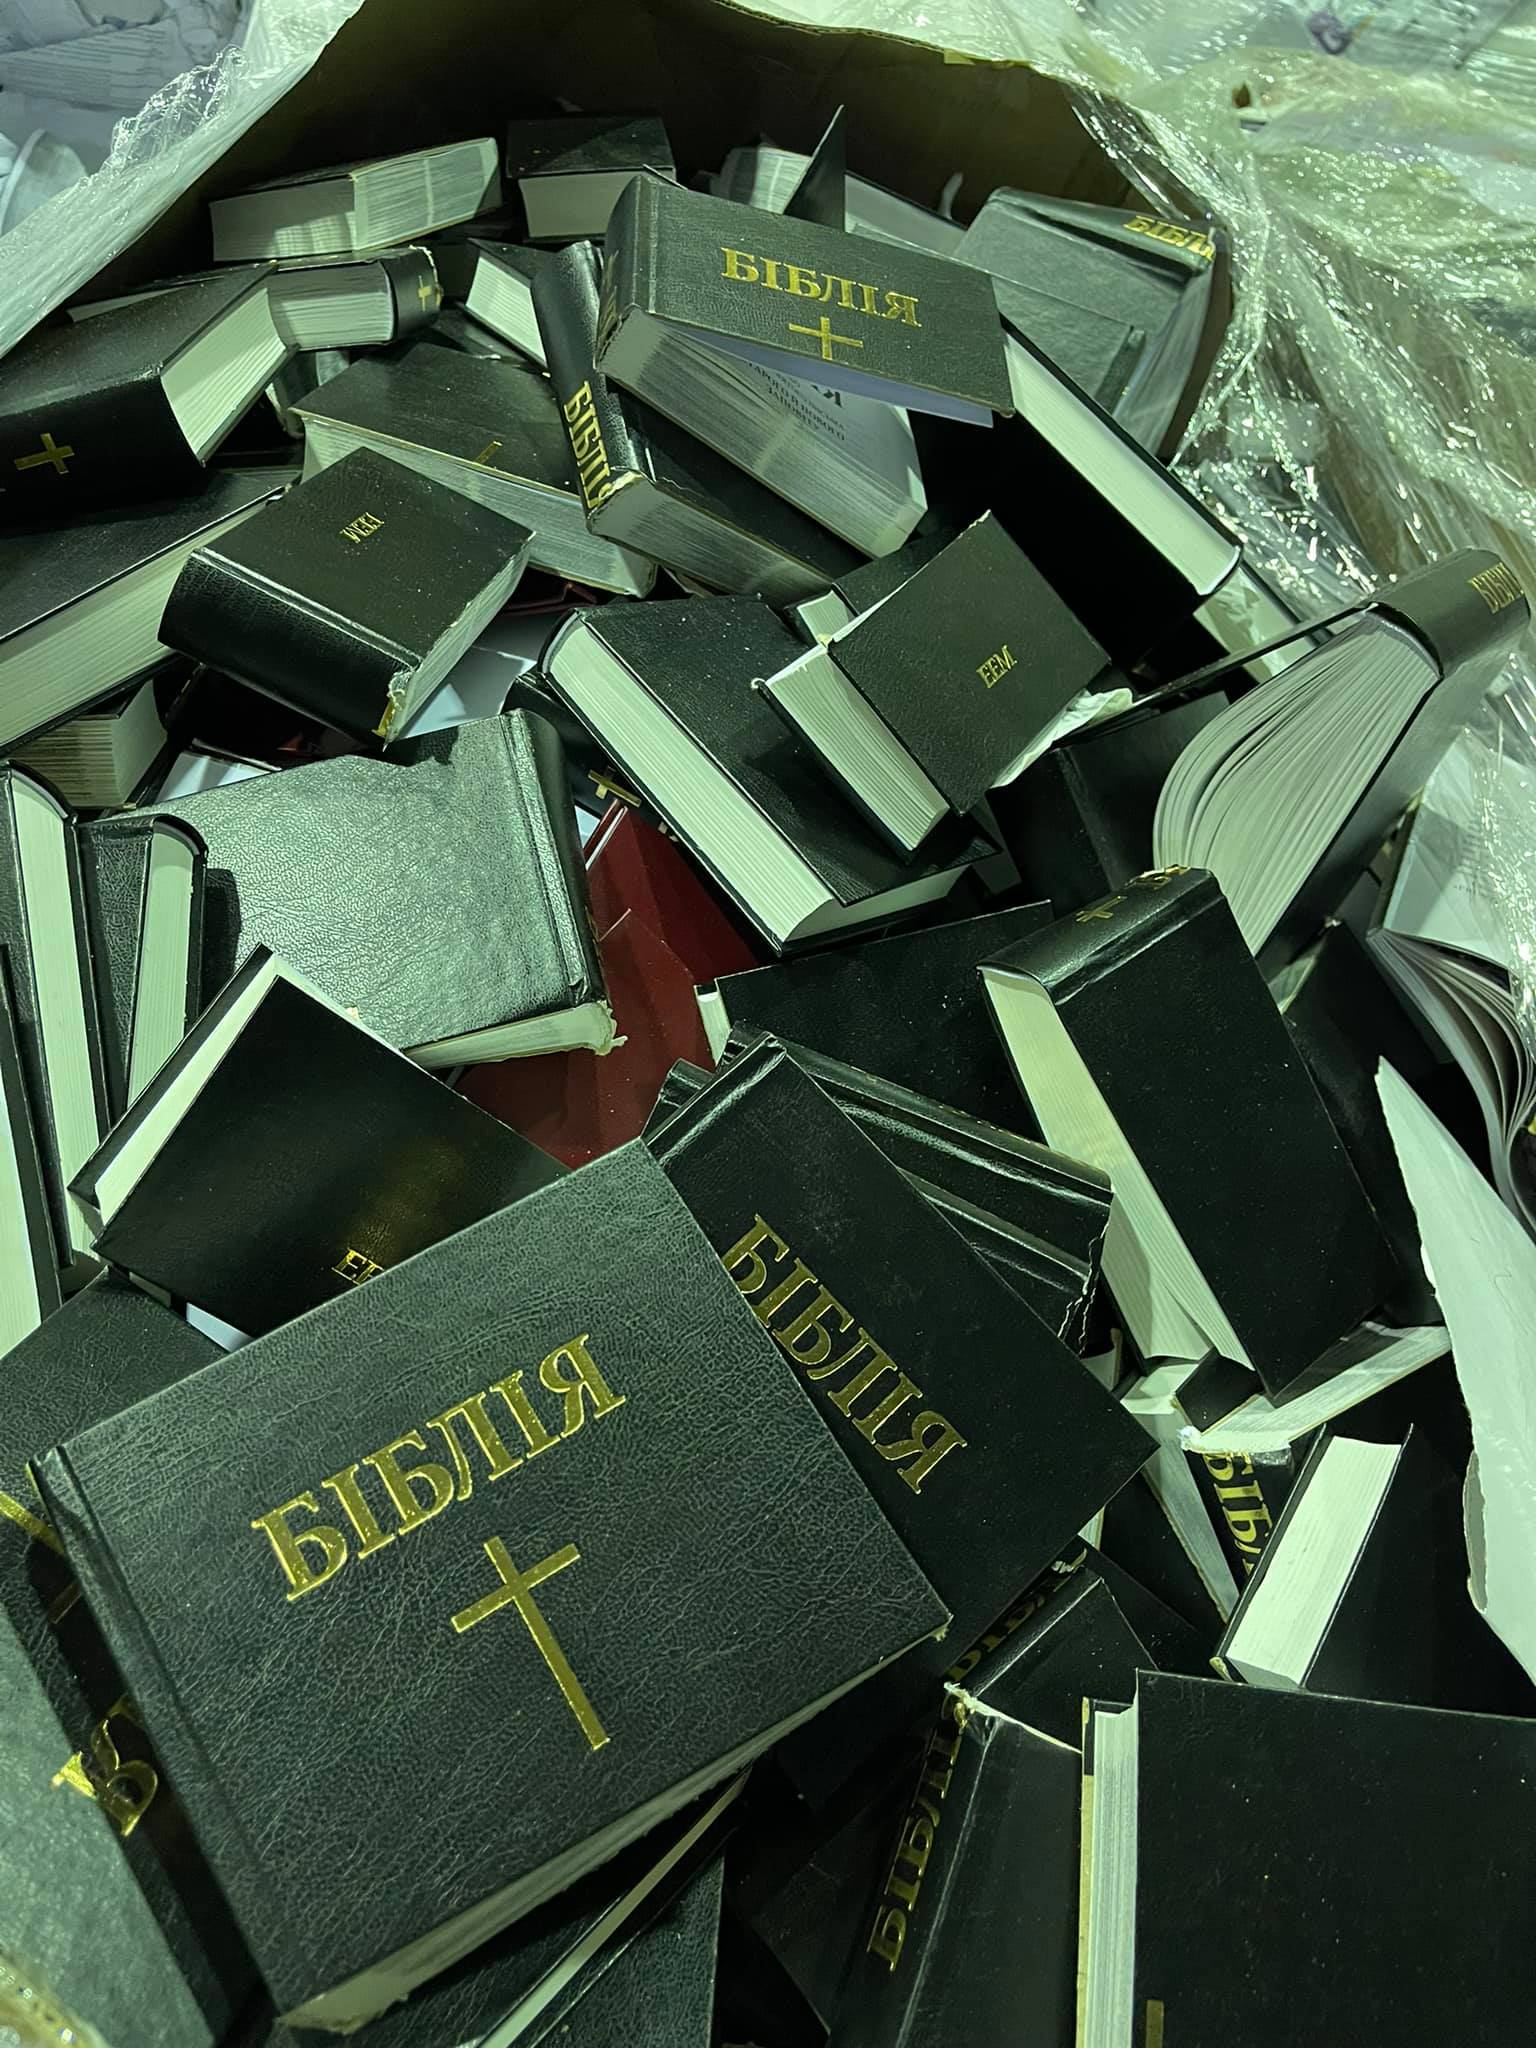 Экземпляры Библии принесли на переработку в Броварах. Скриншот из Фейсбука